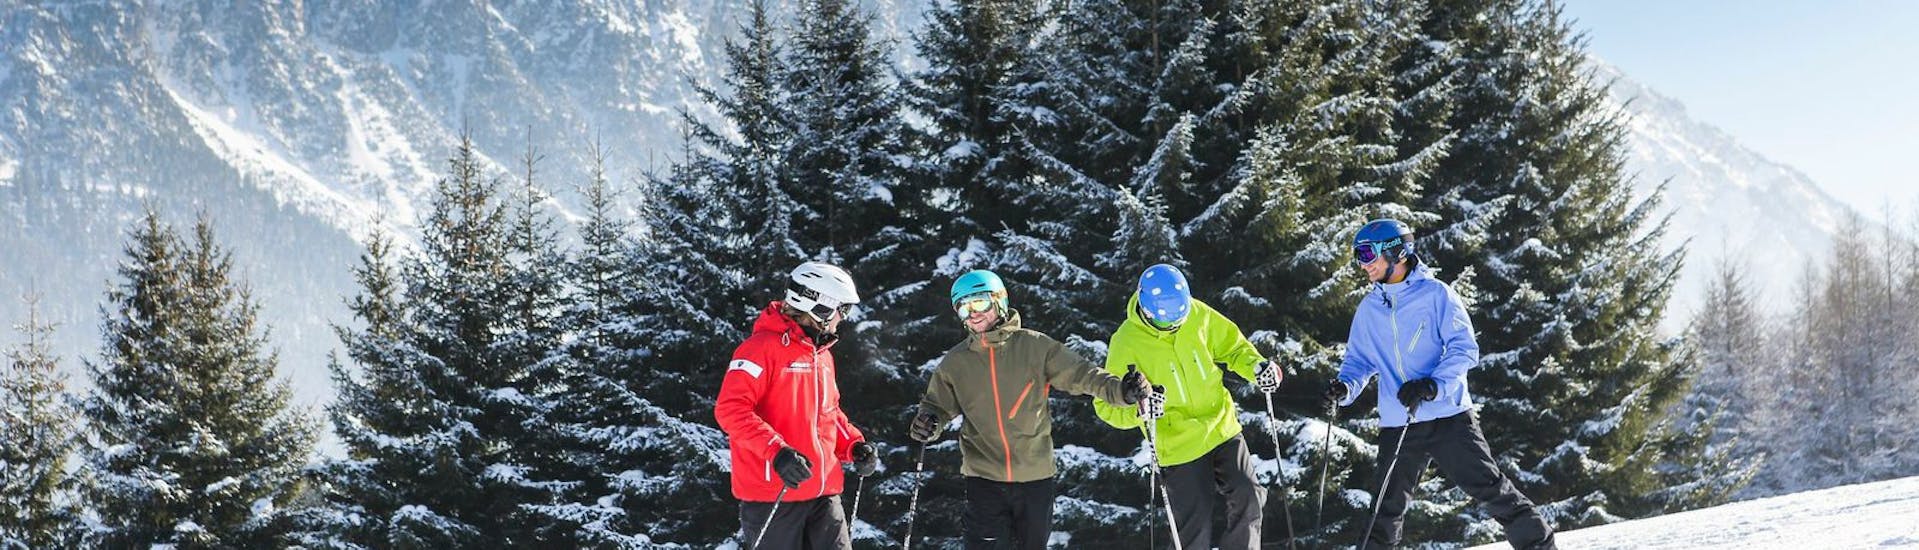 Skileraar en studenten staan op de piste tijdens de skilessen voor volwassenen voor beginners bij Skischool Nova.